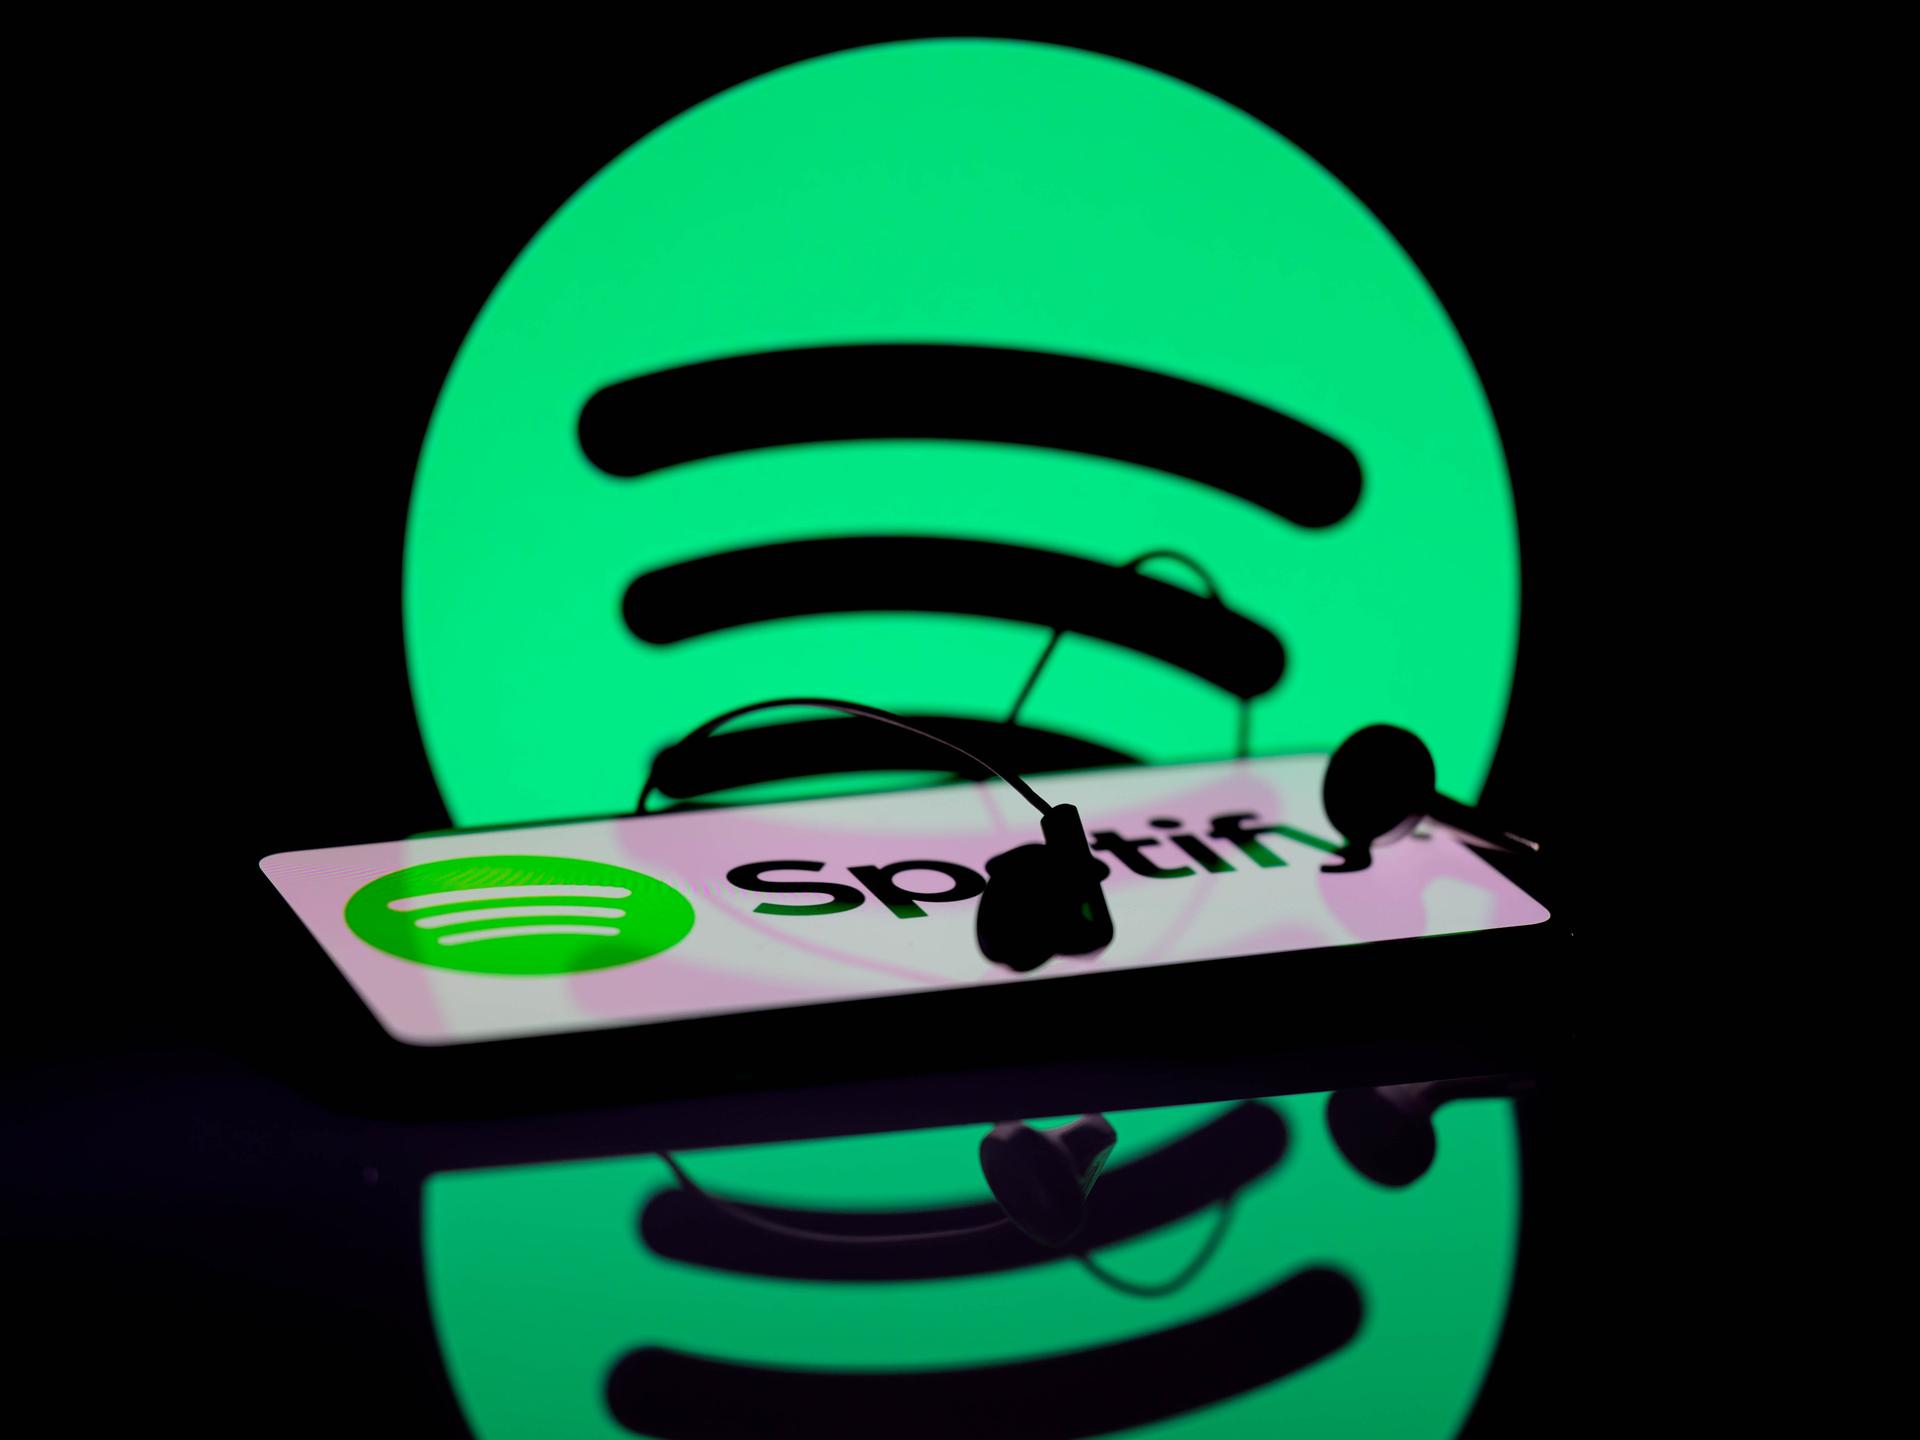 Das Spotify-App wird auf einem Smartphone angezeigt. Im Hintergrund ist das Spotify-Symbol zu sehen.